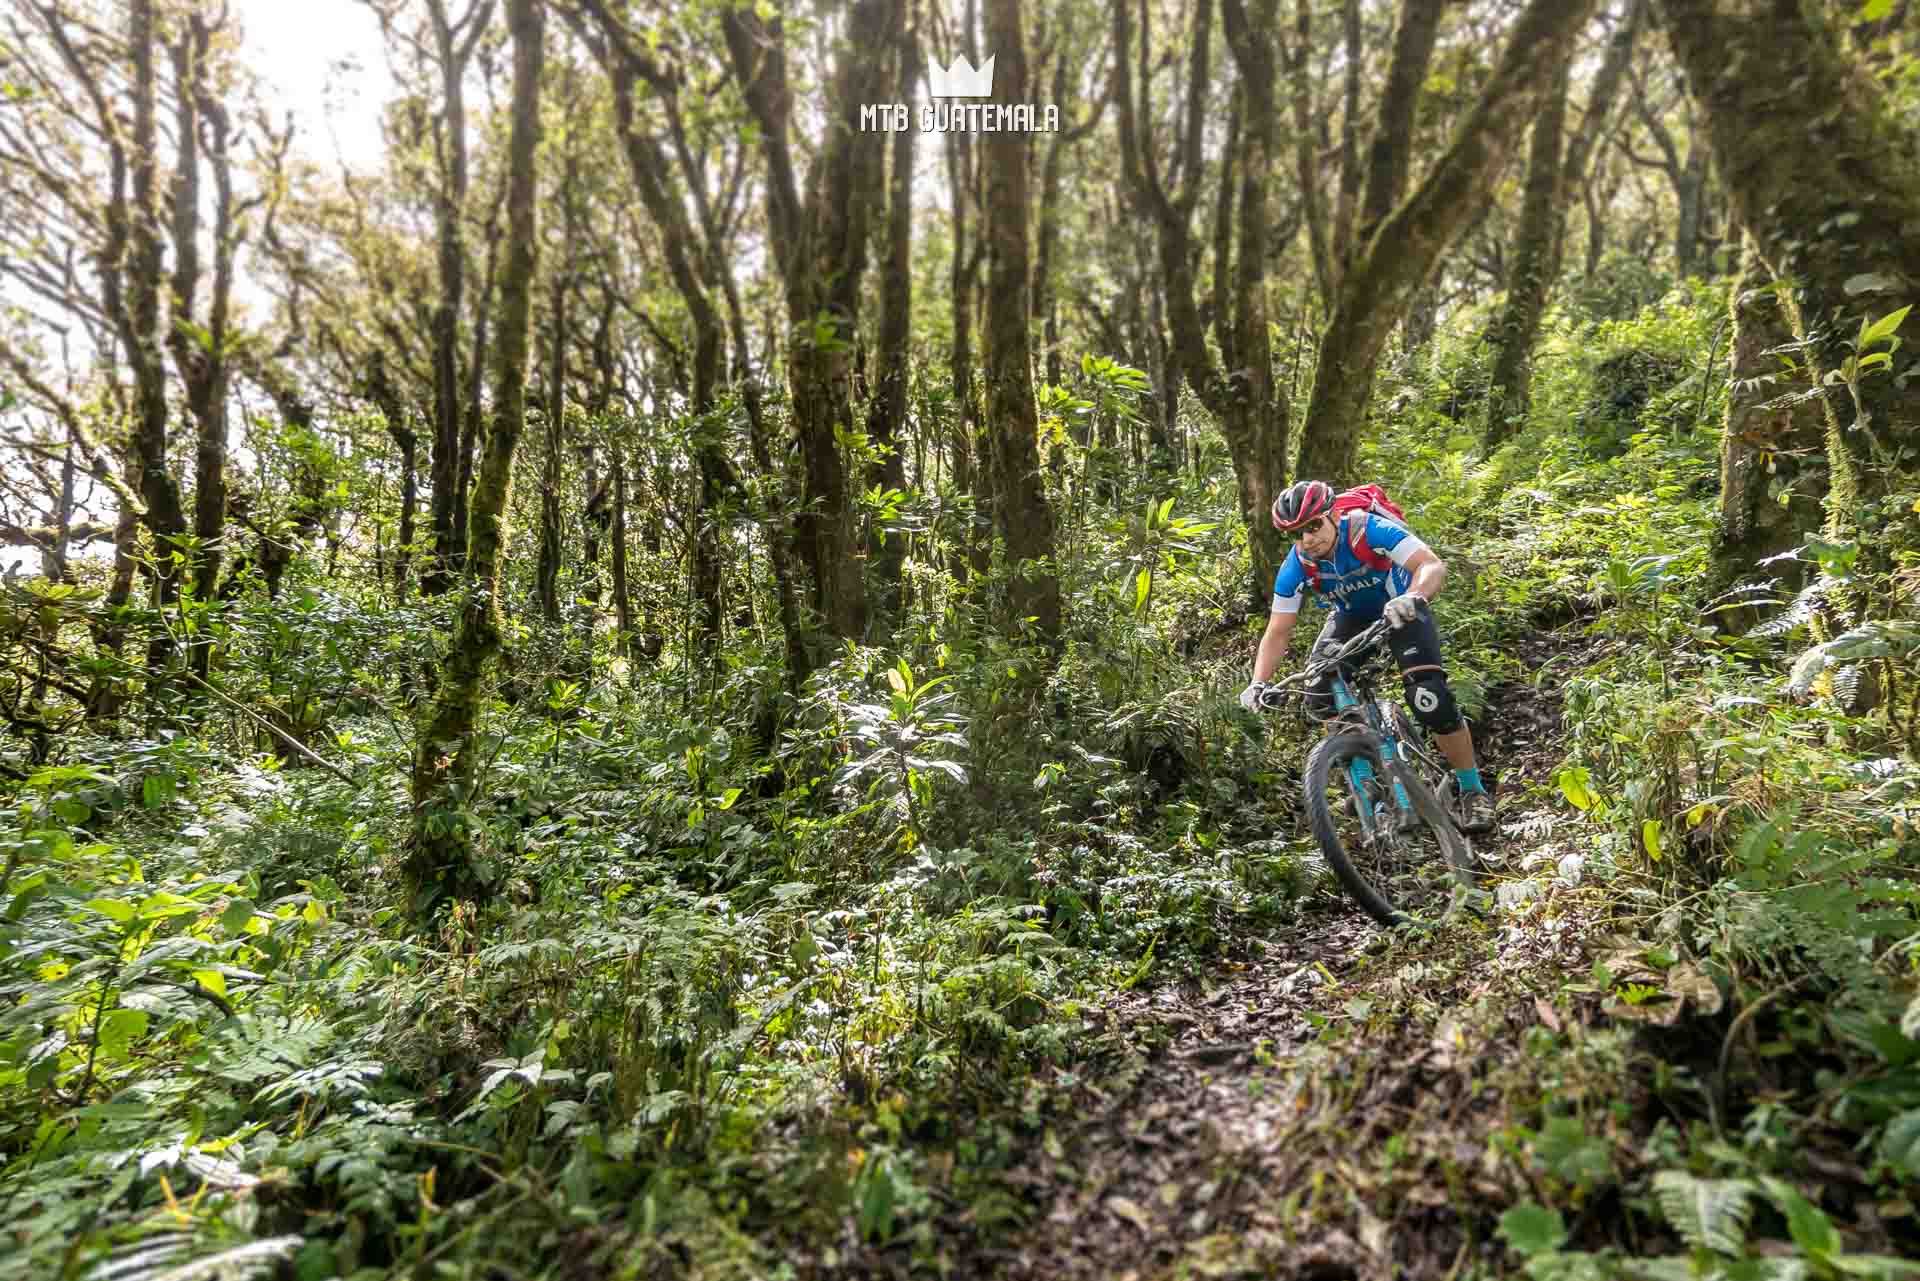 Bosque único en altitud. Tour de aventura en bicicleta de montaña por el Valle Escondido Chimaltenango, Guatemala